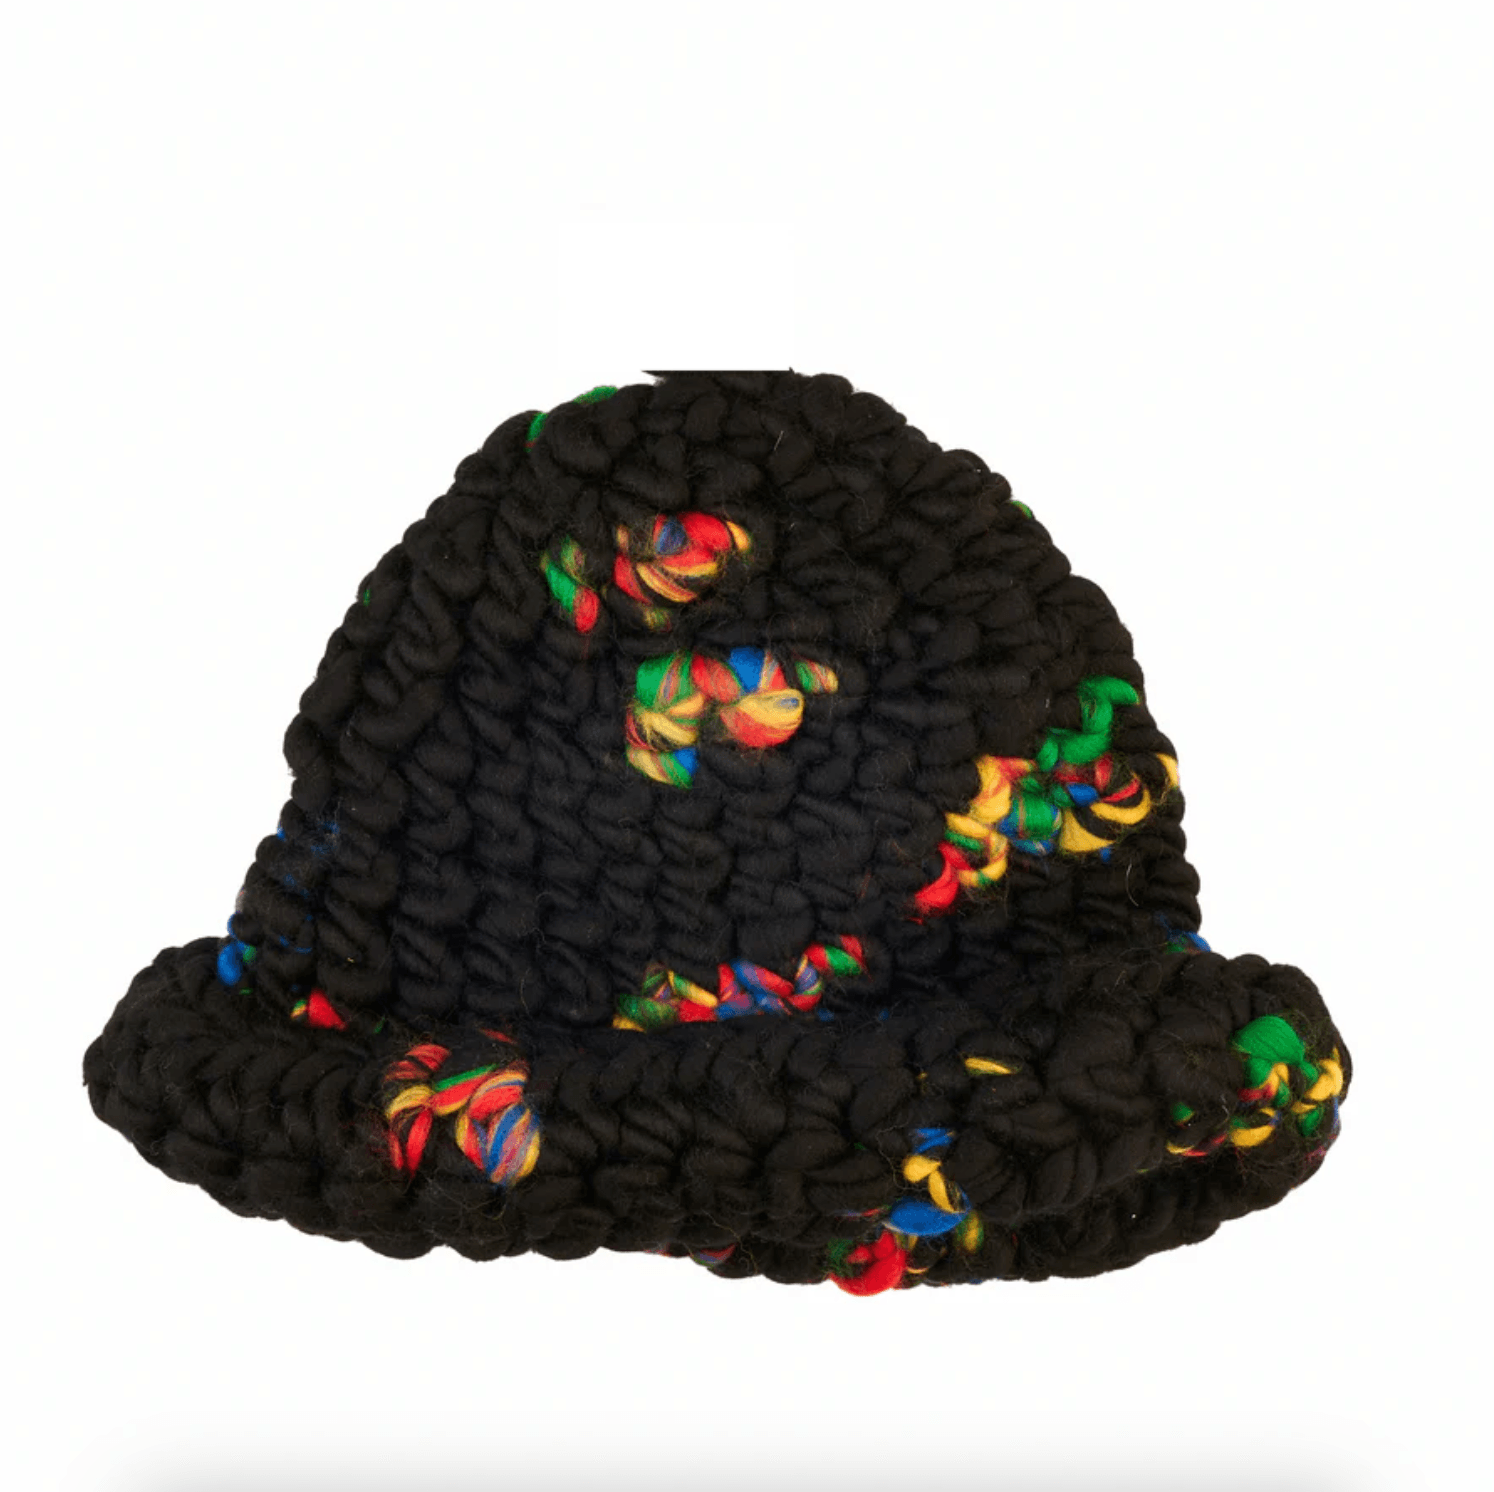 Roll Bucket Hat in Lego by Mischa Lampert - Haven